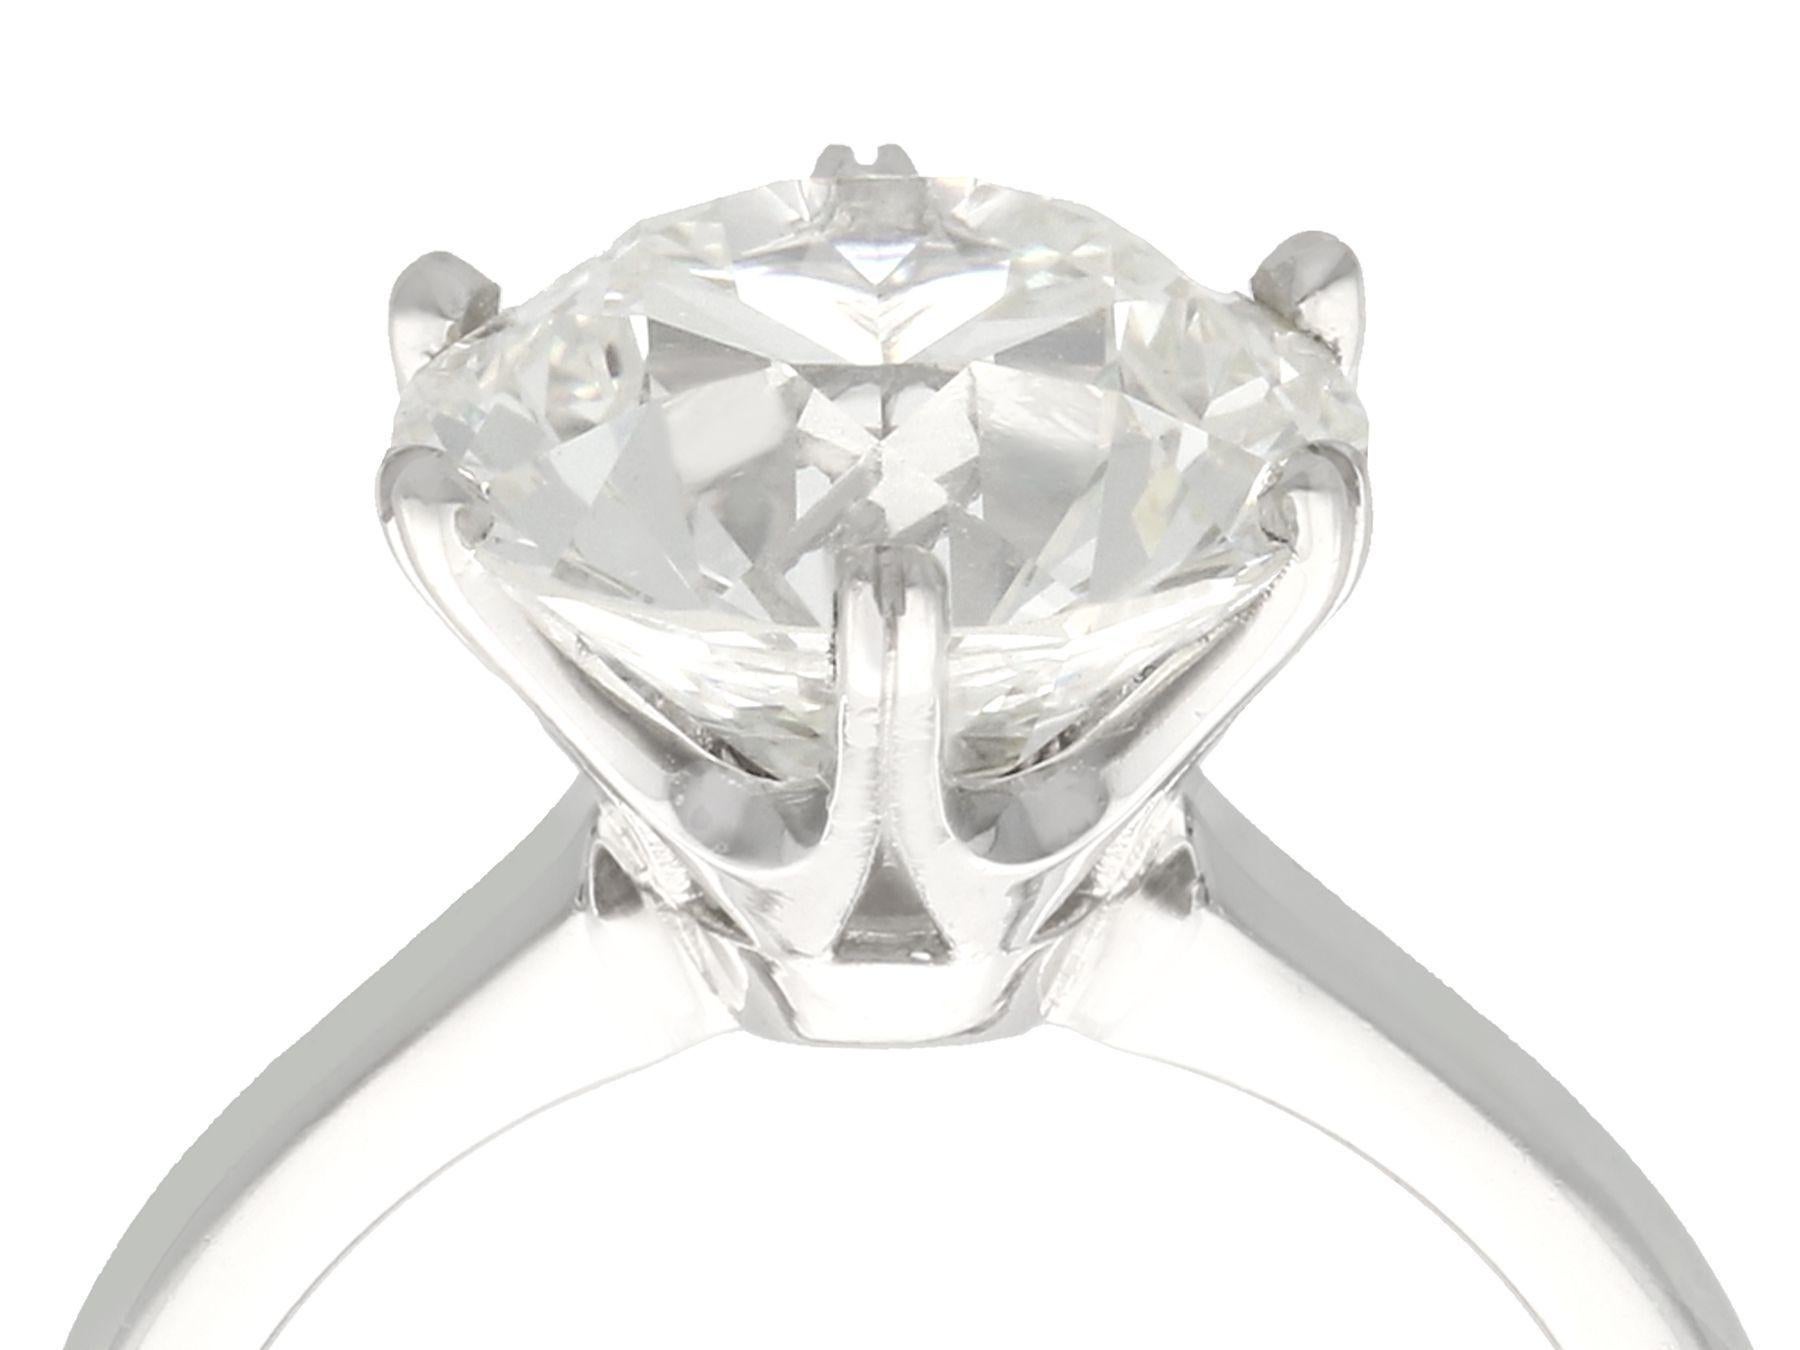 Un excepcional e impresionante anillo solitario de diamante antiguo de 4,89 quilates, expuesto en un engaste contemporáneo de platino; forma parte de nuestras diversas colecciones de joyas de diamantes.

Excepcional e impresionante anillo solitario